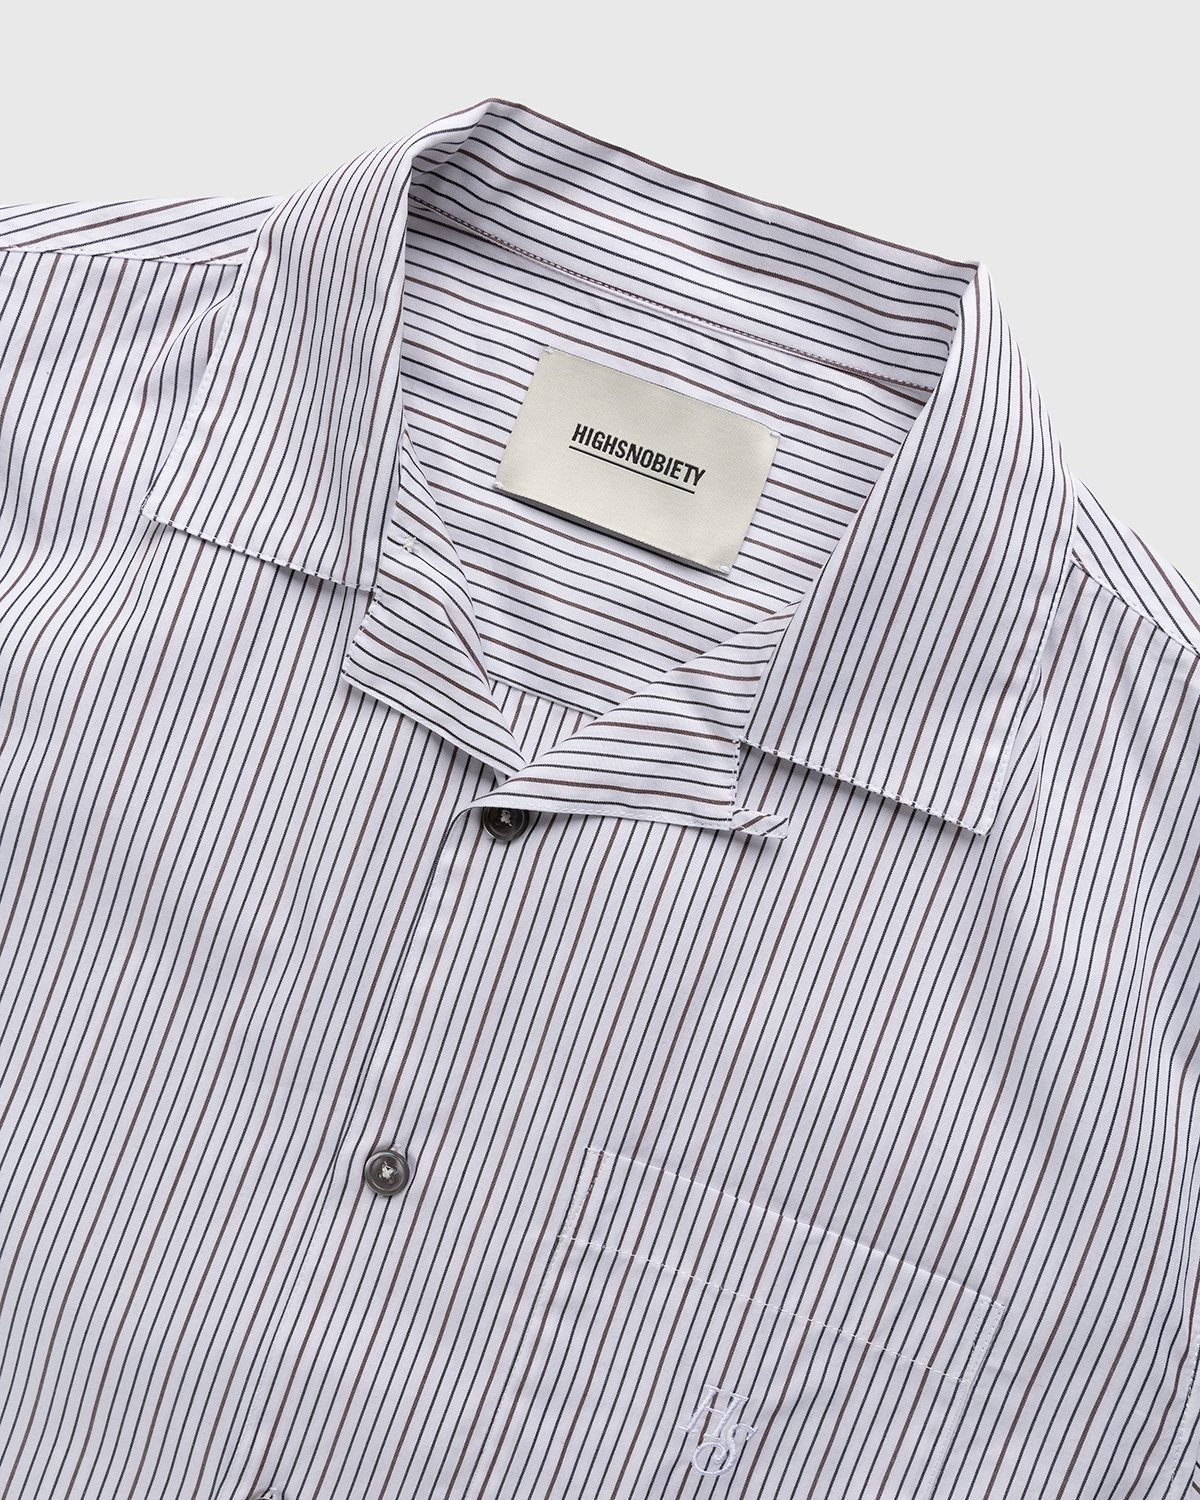 Highsnobiety – Striped Poplin Short-Sleeve Shirt White/Black - Shirts - White - Image 3